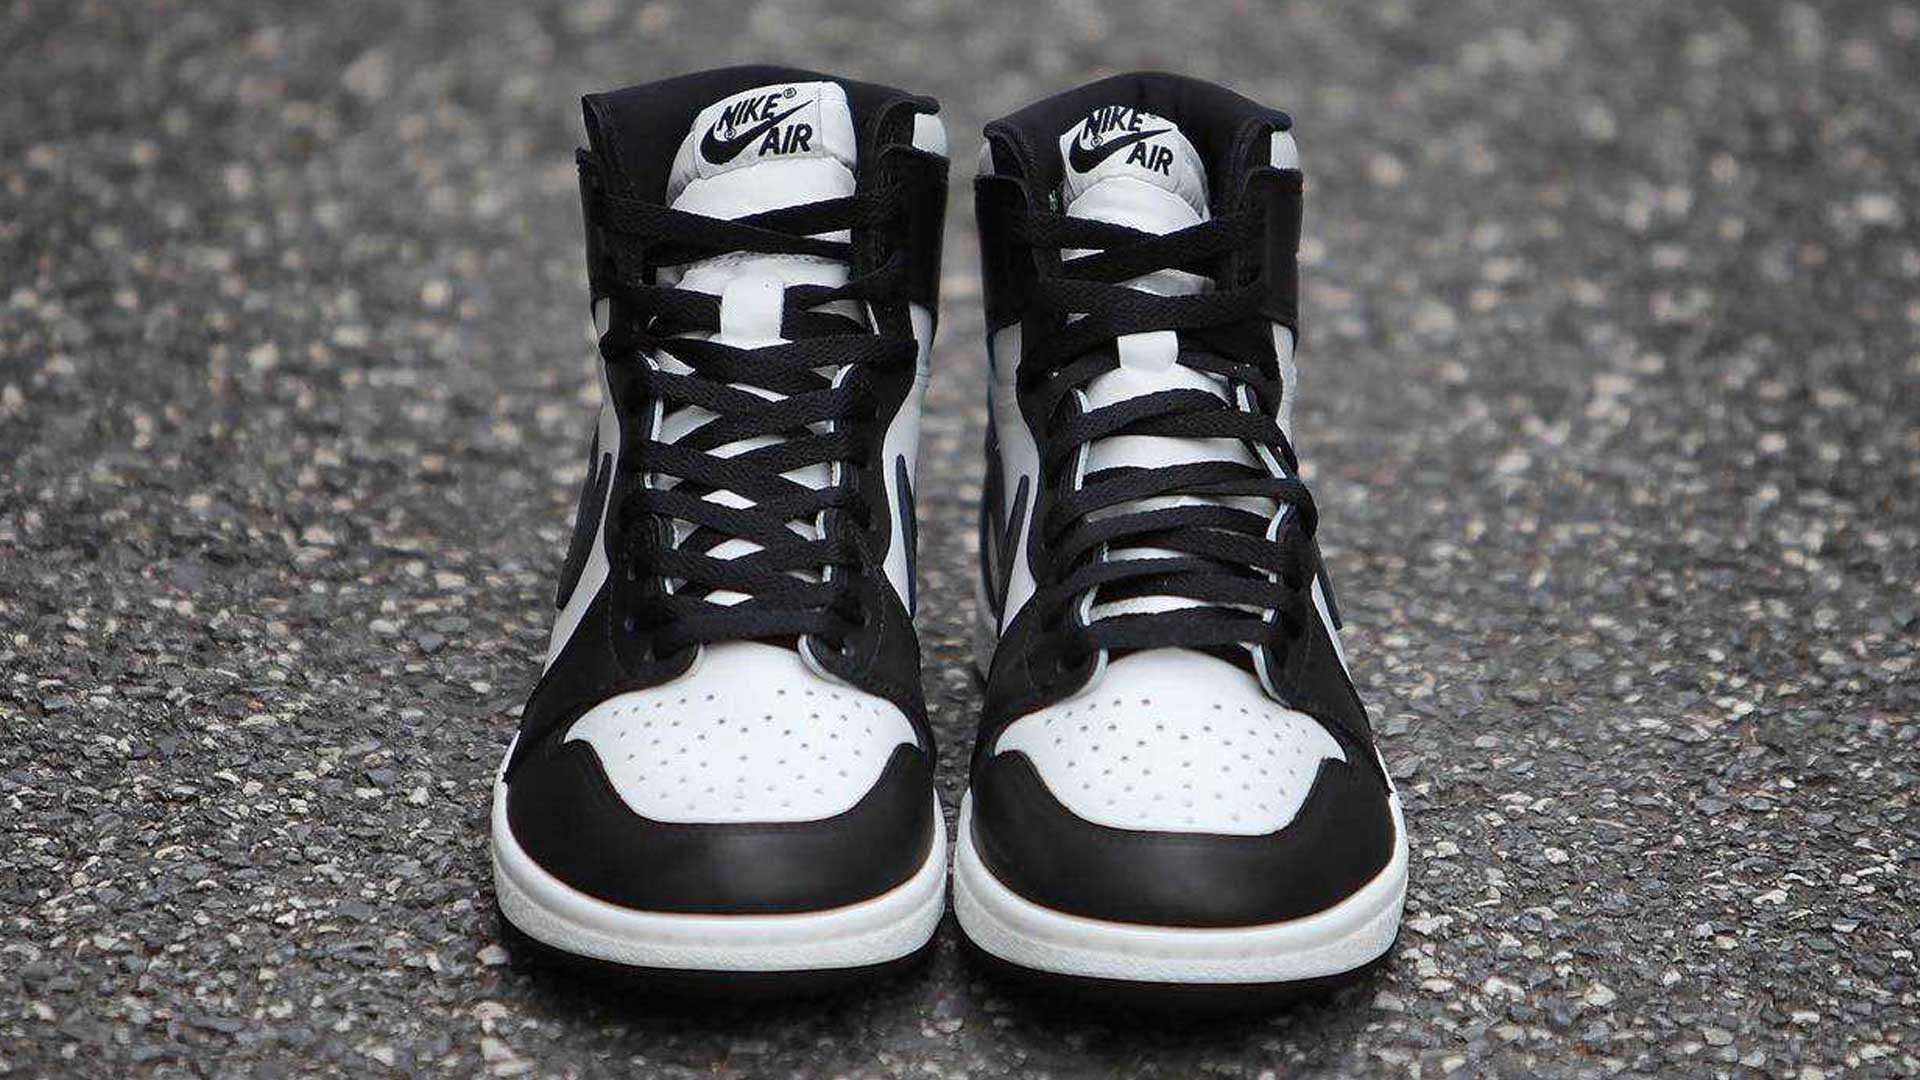 ナイキの新作スニーカー「Nike Air Jordan 1 High '85」の国内発売予定